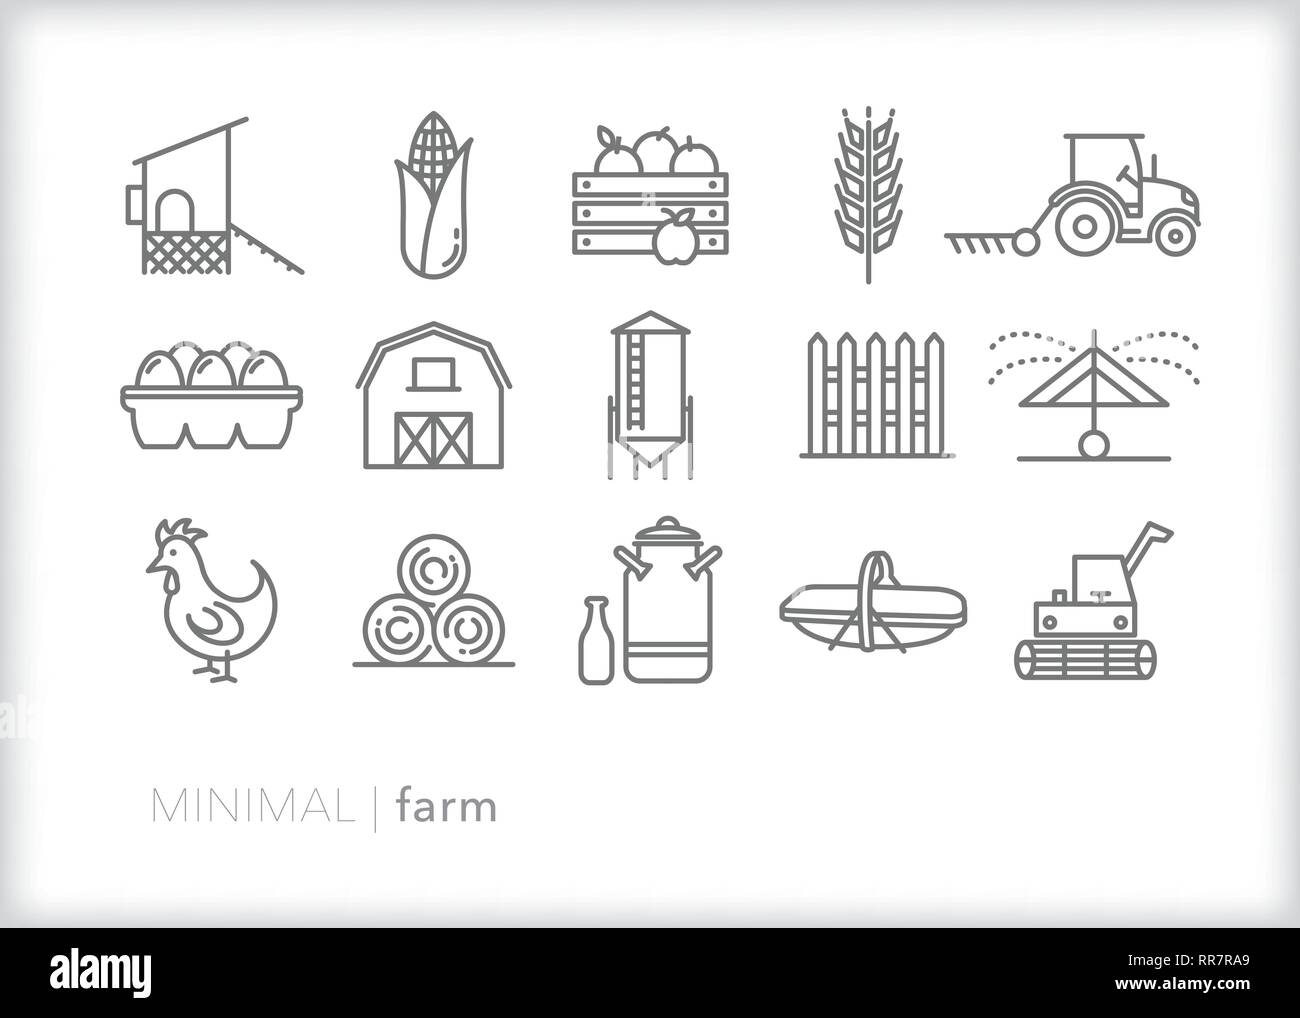 Satz von 15 Bauernhof Zeile für Symbole für eine Familie auf dem Bauernhof in einer ländlichen Gegend einschließlich produzieren, Scheune und landwirtschaftlichen Geräten Stock Vektor